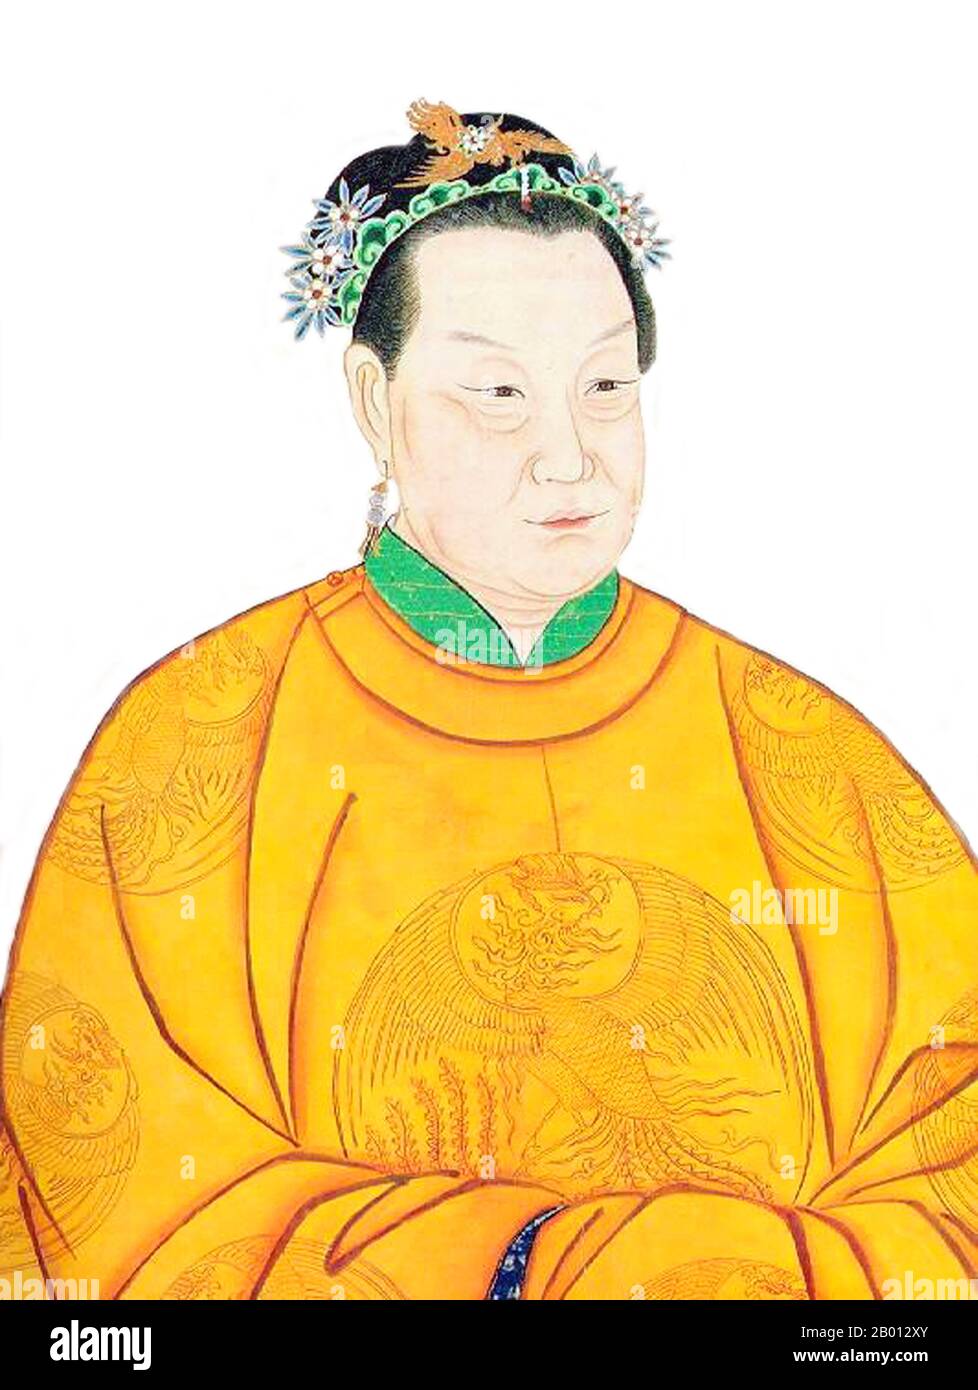 Cina: Imperatrice ma (1378-1402), consorte del 2 ° imperatore Ming Jianwen (r. 1398-1402). L'imperatrice ma (1378-1402), formalmente conosciuta come l'imperatrice Xiaominrang, è stata l'imperatrice Consort del secondo imperatore Ming Jianwen (r.. 1398-1402). Figlia di un funzionario cittadino, sposò il nipote dell'imperatore Hongwu, Zhu Yunwen, e divenne Principessa Corona nel 1395. Morì nel 1402 quando Zhu di, il futuro imperatore Yongle, fece fuoco al palazzo. Foto Stock